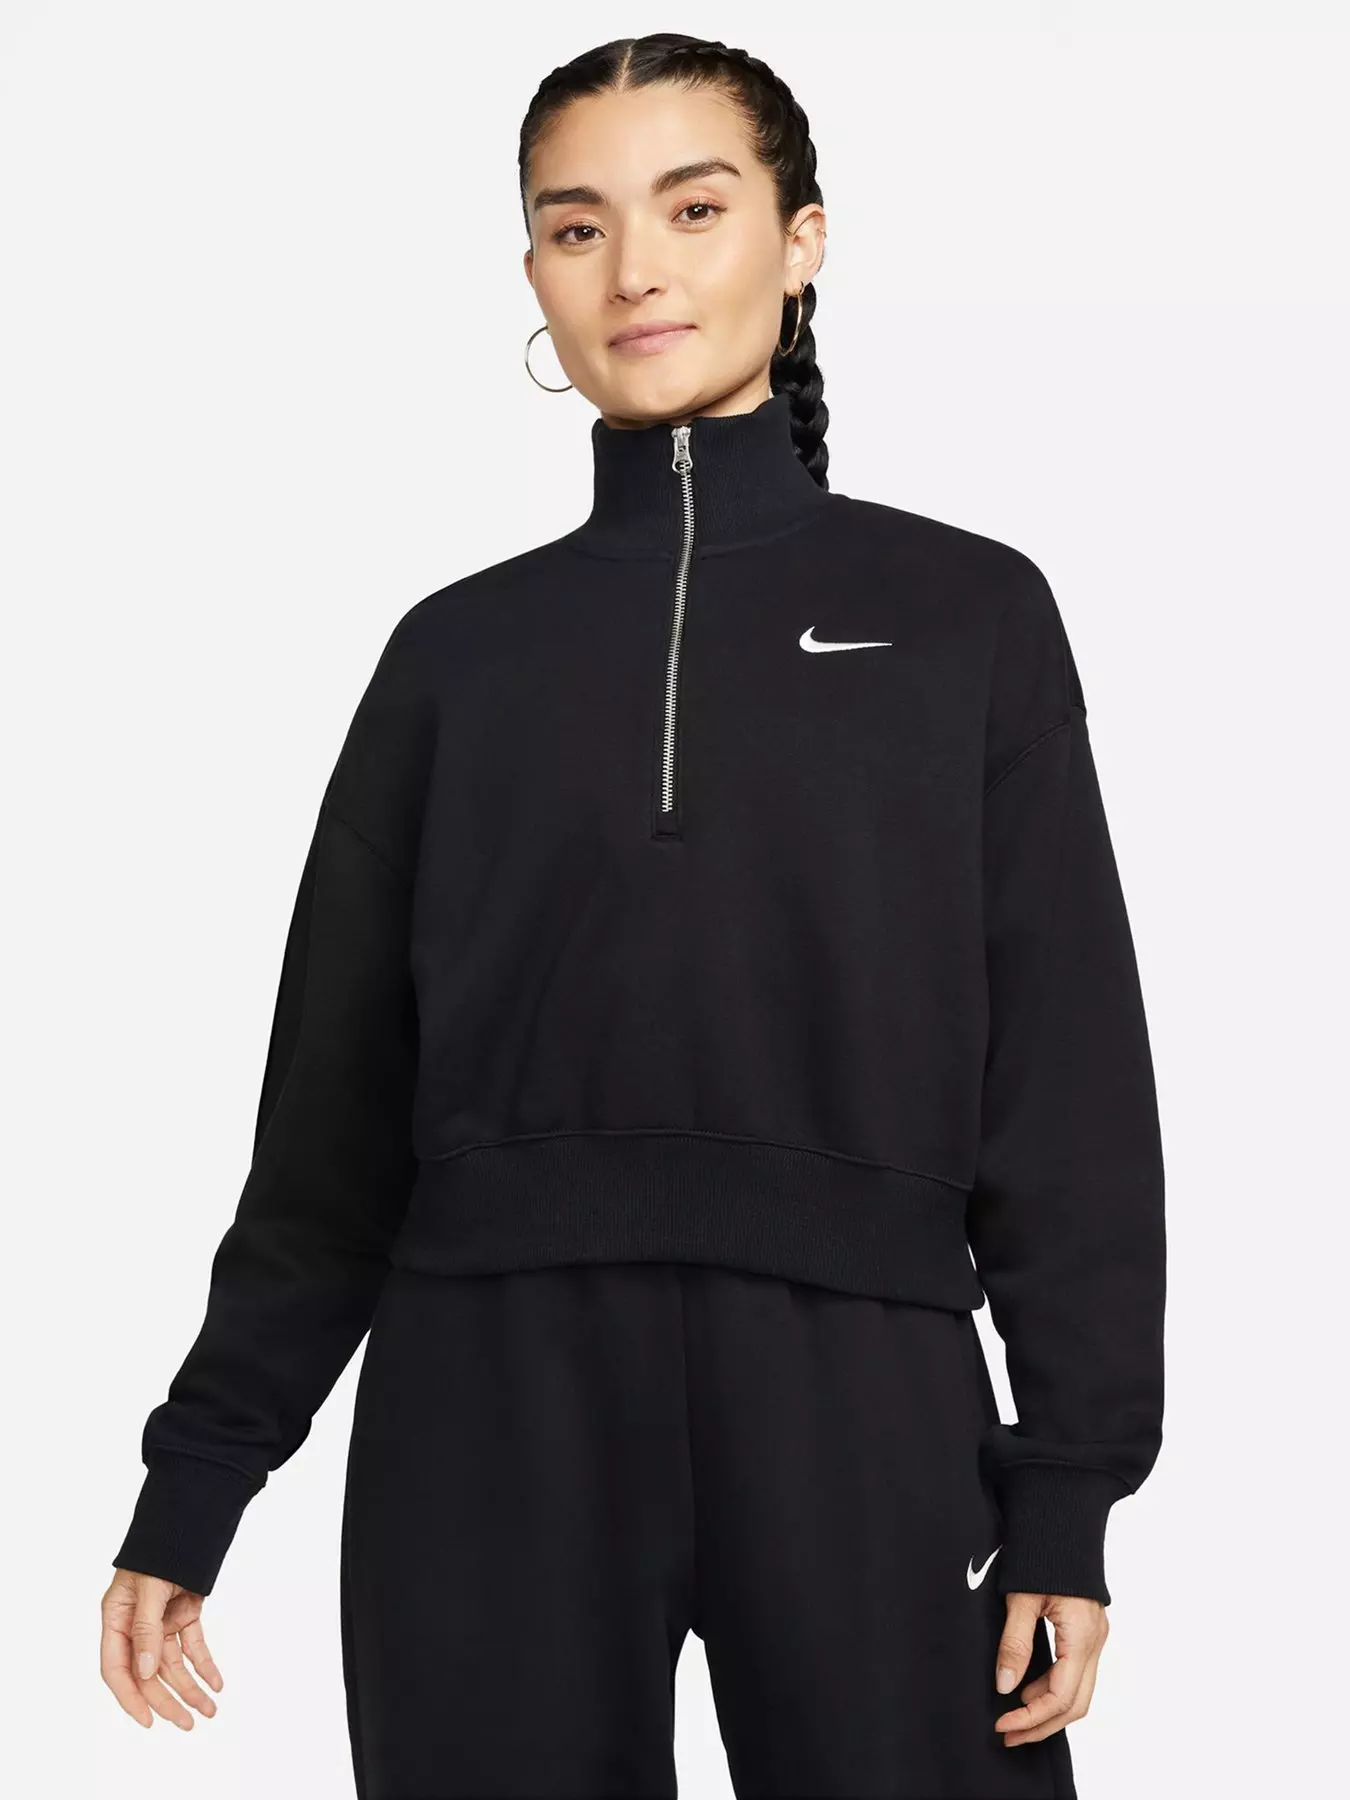 Nike Sportswear Phoenix Fleece Women's Oversized Sweatshirt - Green